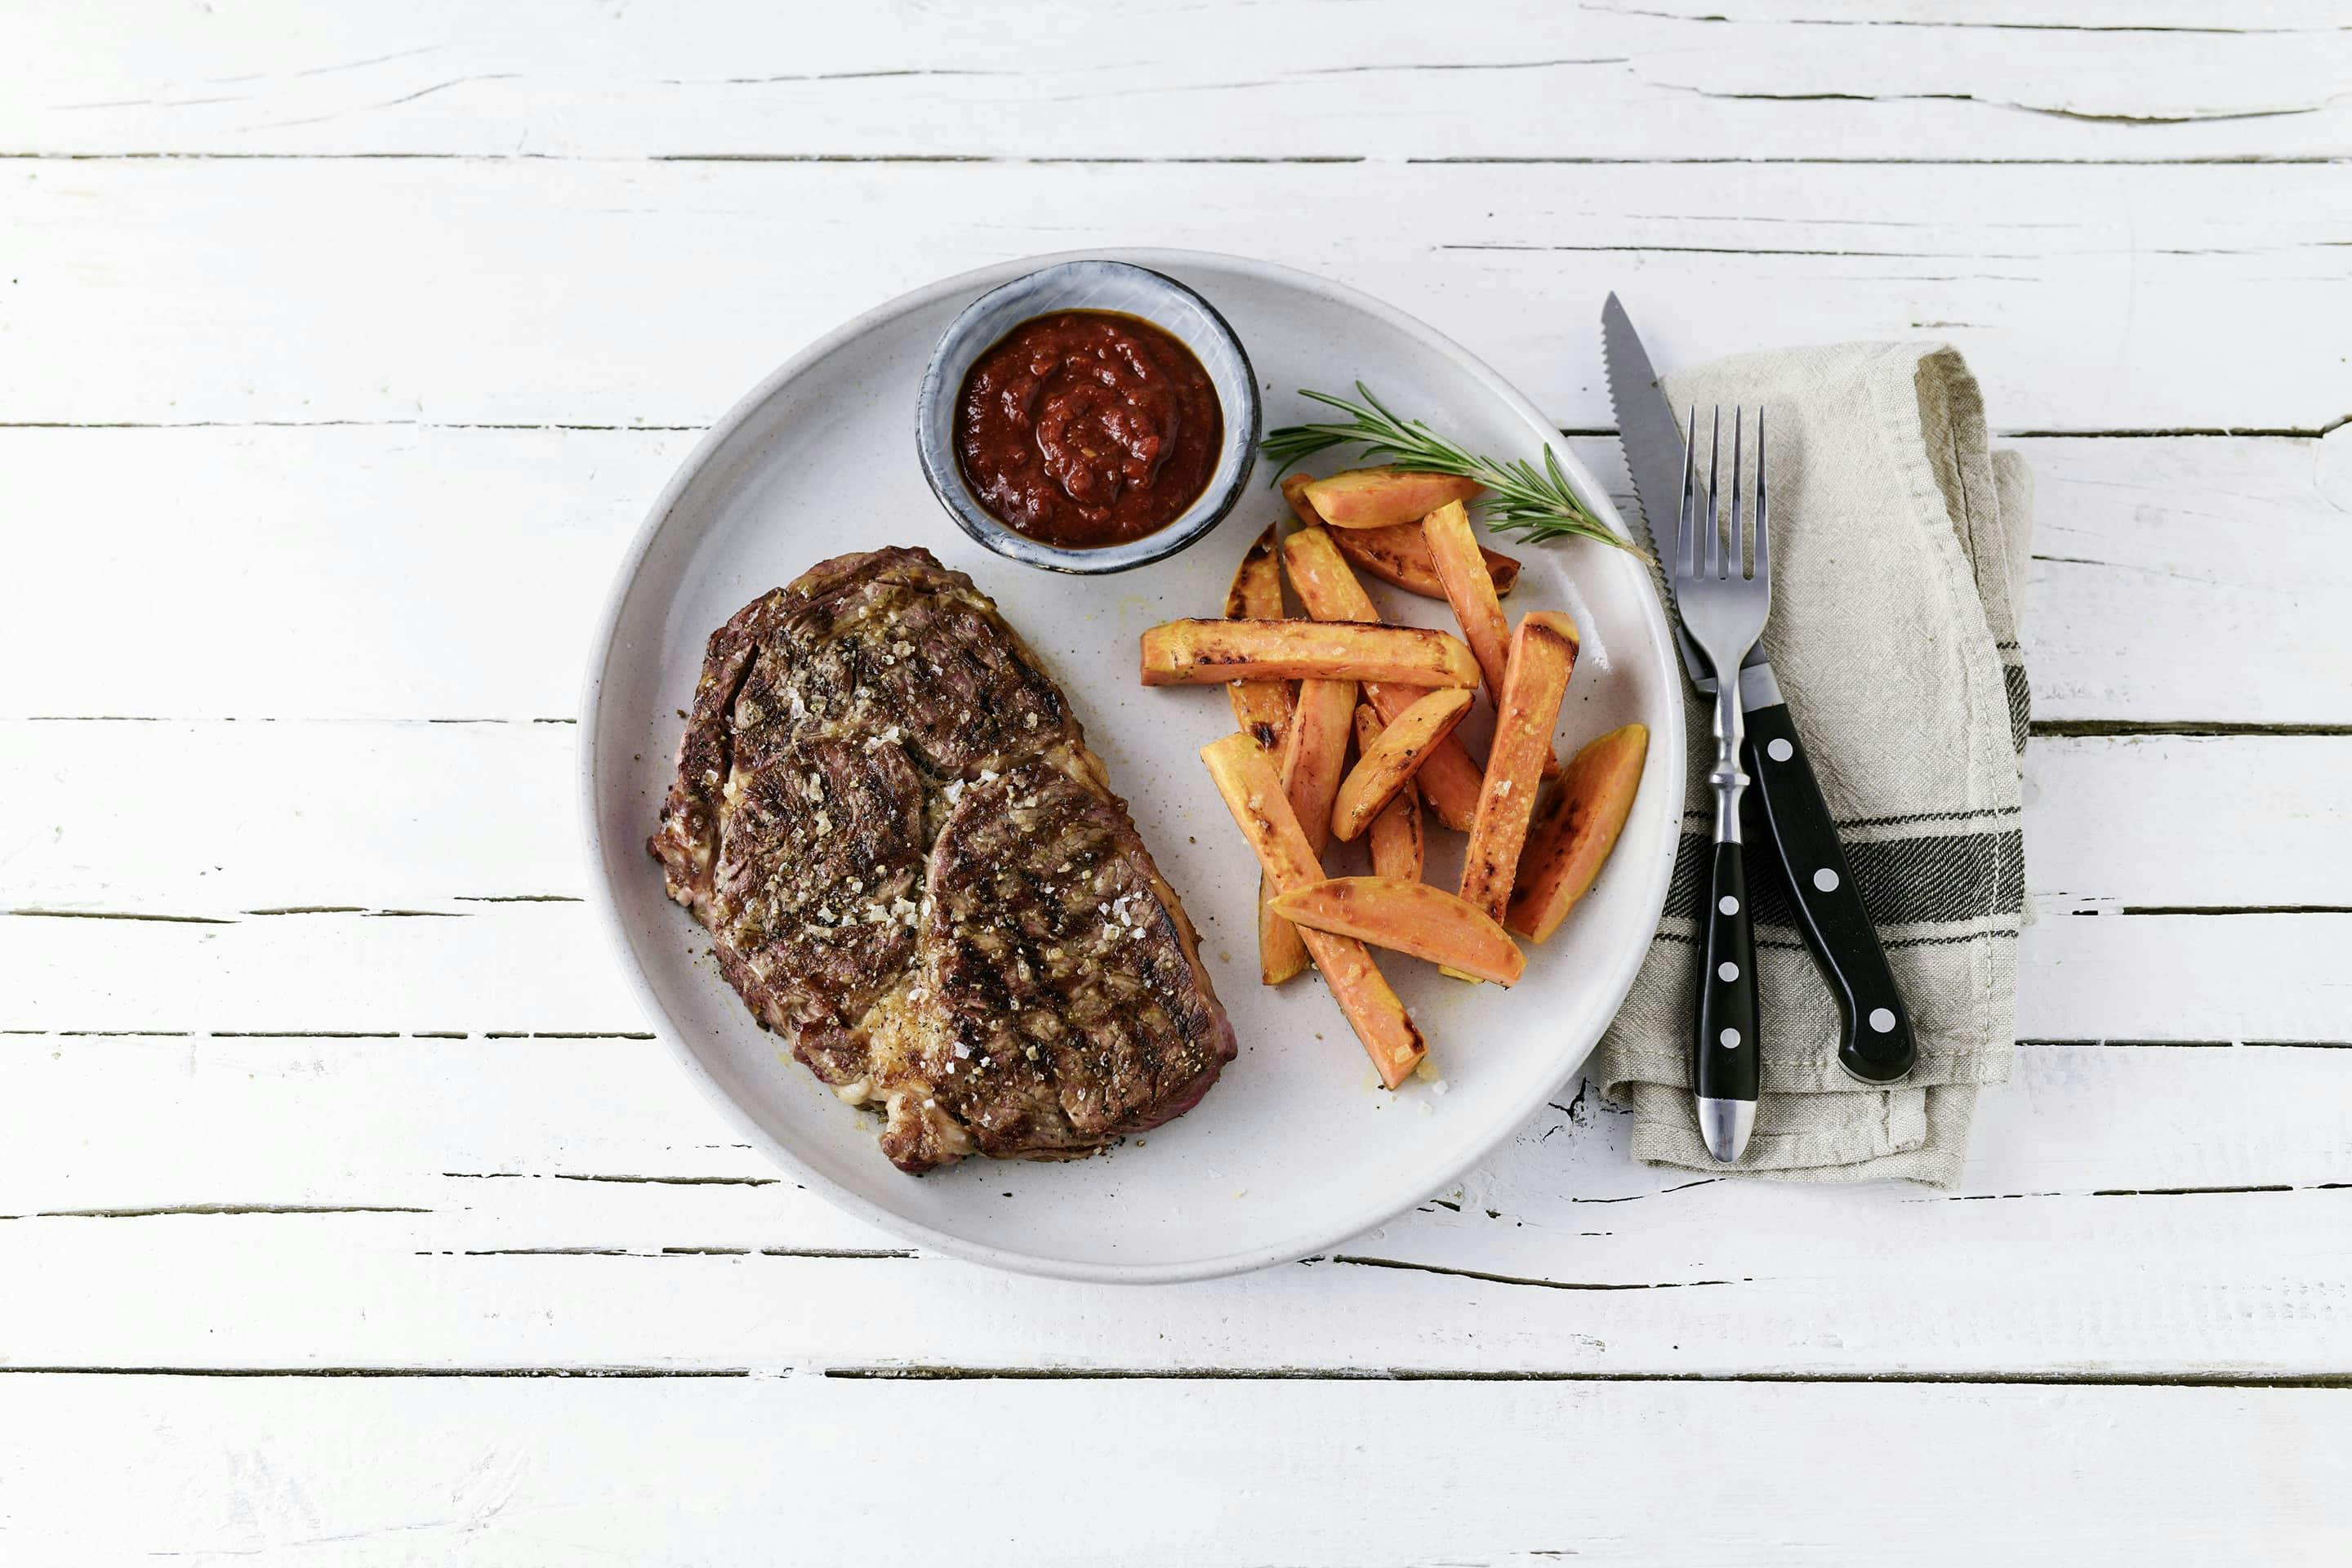 Magic-Dust-Steak mit Sueßkartoffelsticks und Sauce in einem Schälchen auf einem weißen Teller mit Besteck und Serviette